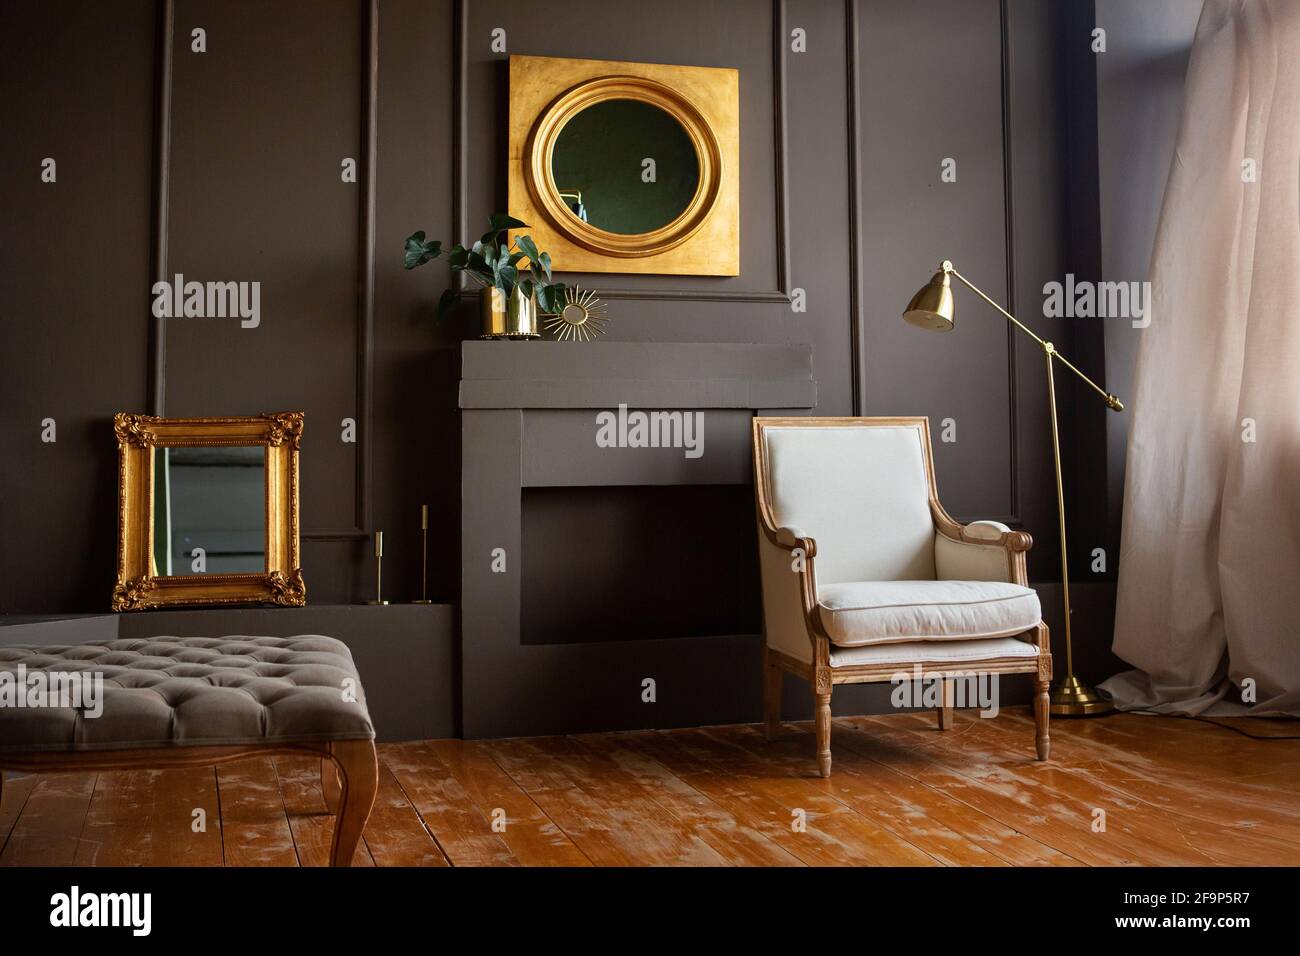 Chaise grise élégante contre un mur gris foncé.Intérieur de salon tendance, à côté d'une lampe et d'un miroir. Banque D'Images